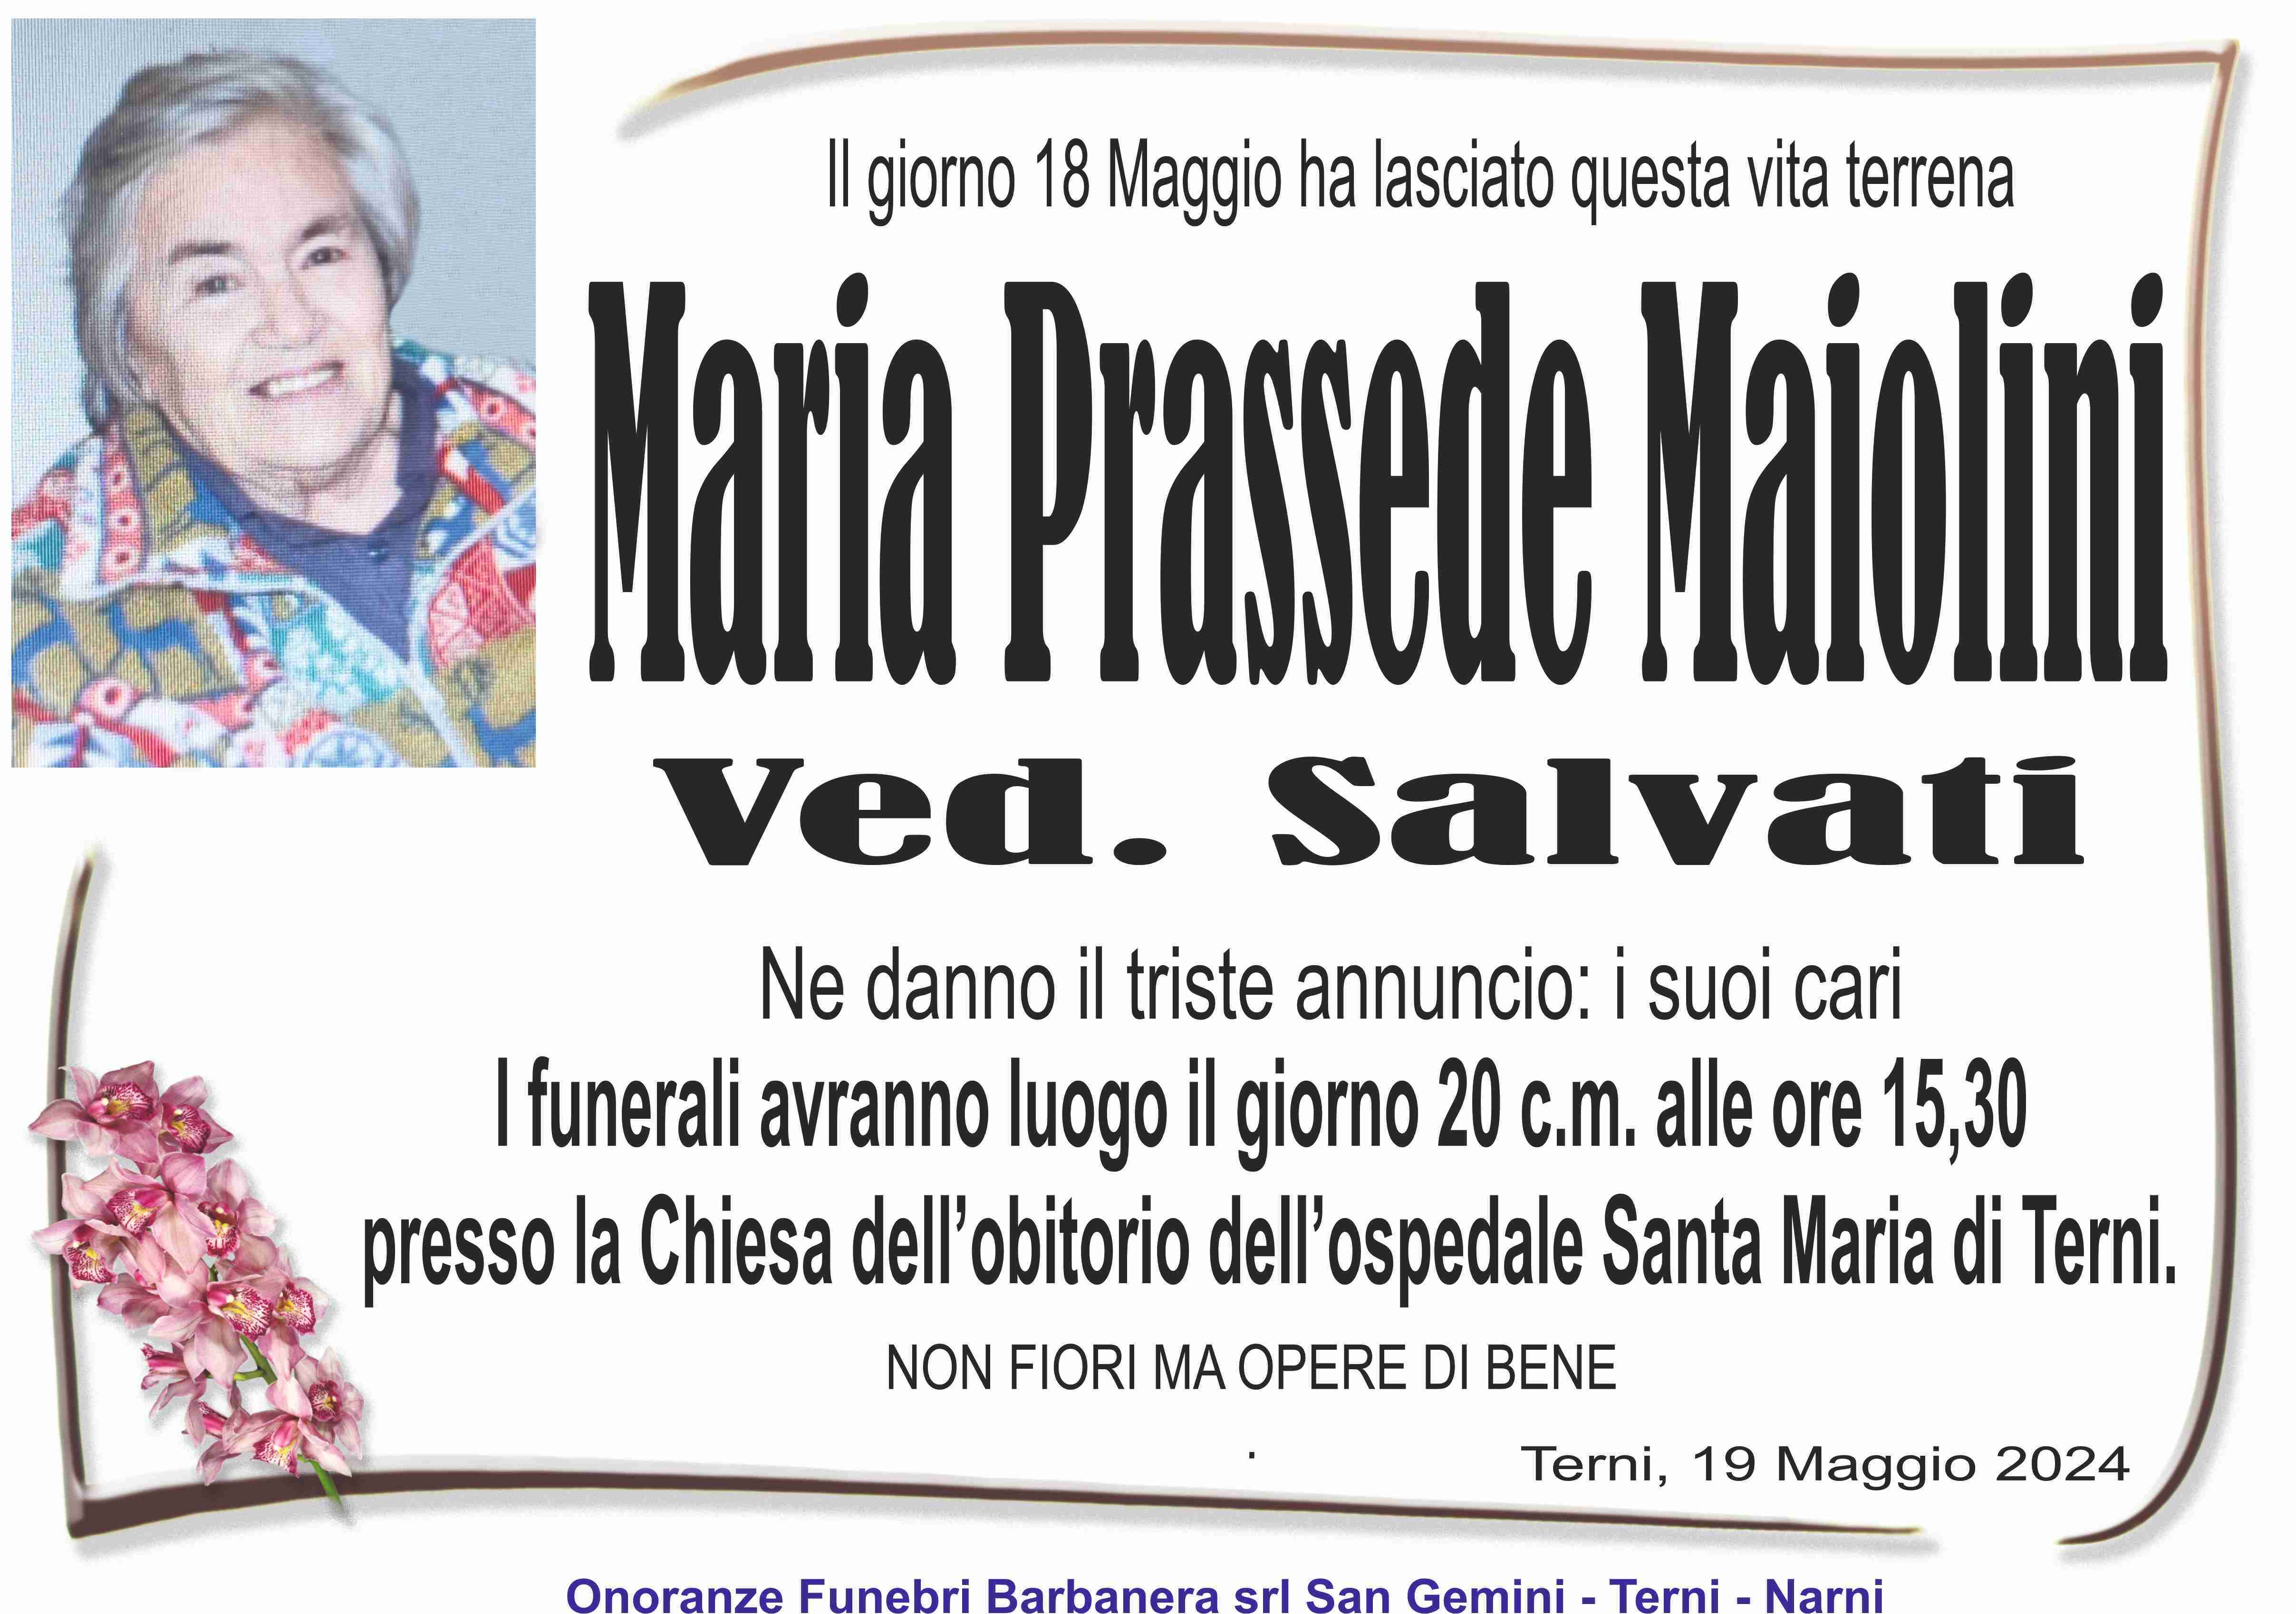 Maria Prassede Maiolini